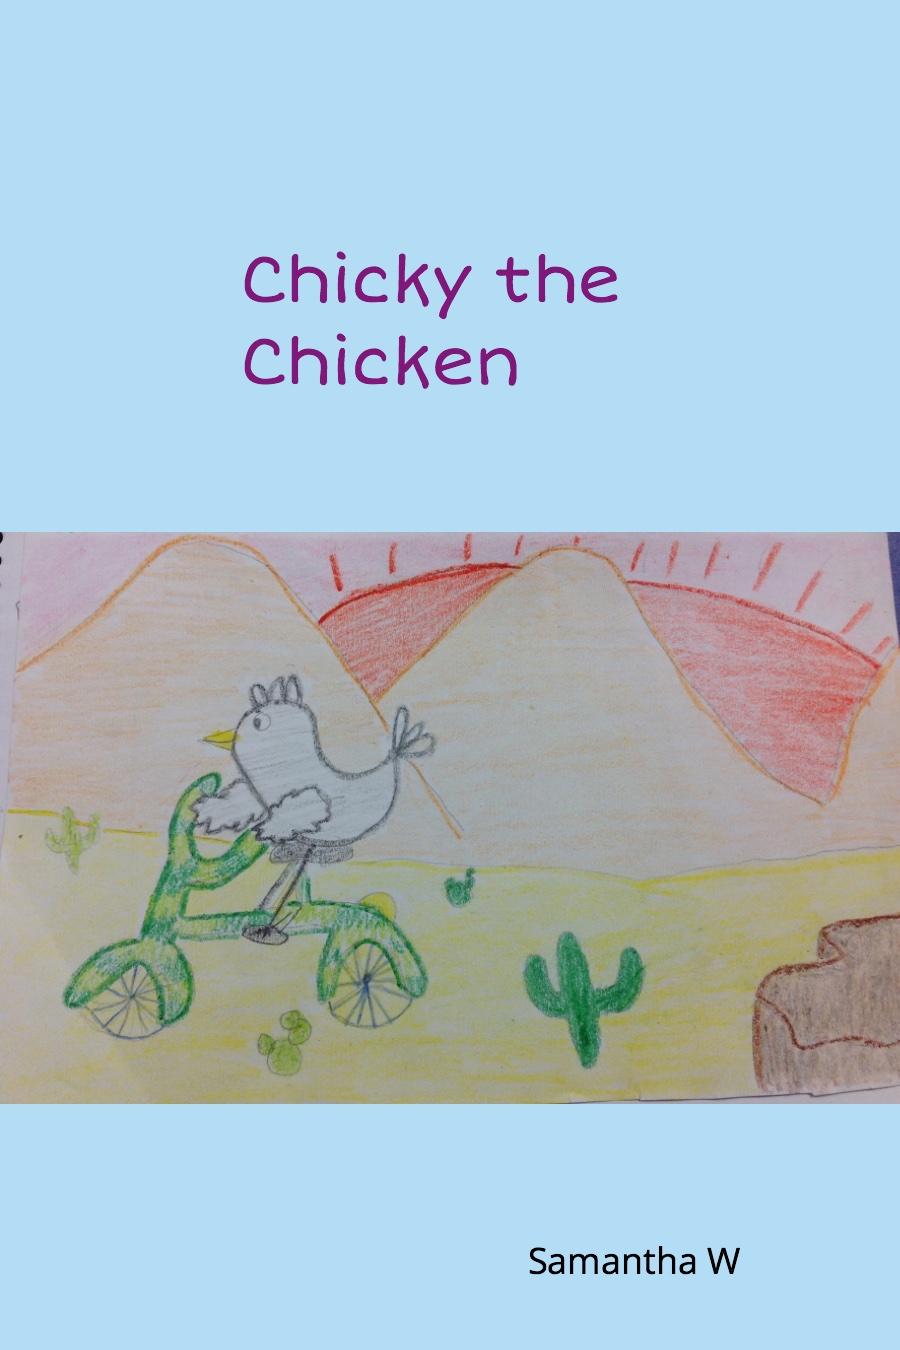 Chicky the Chicken by Samantha W